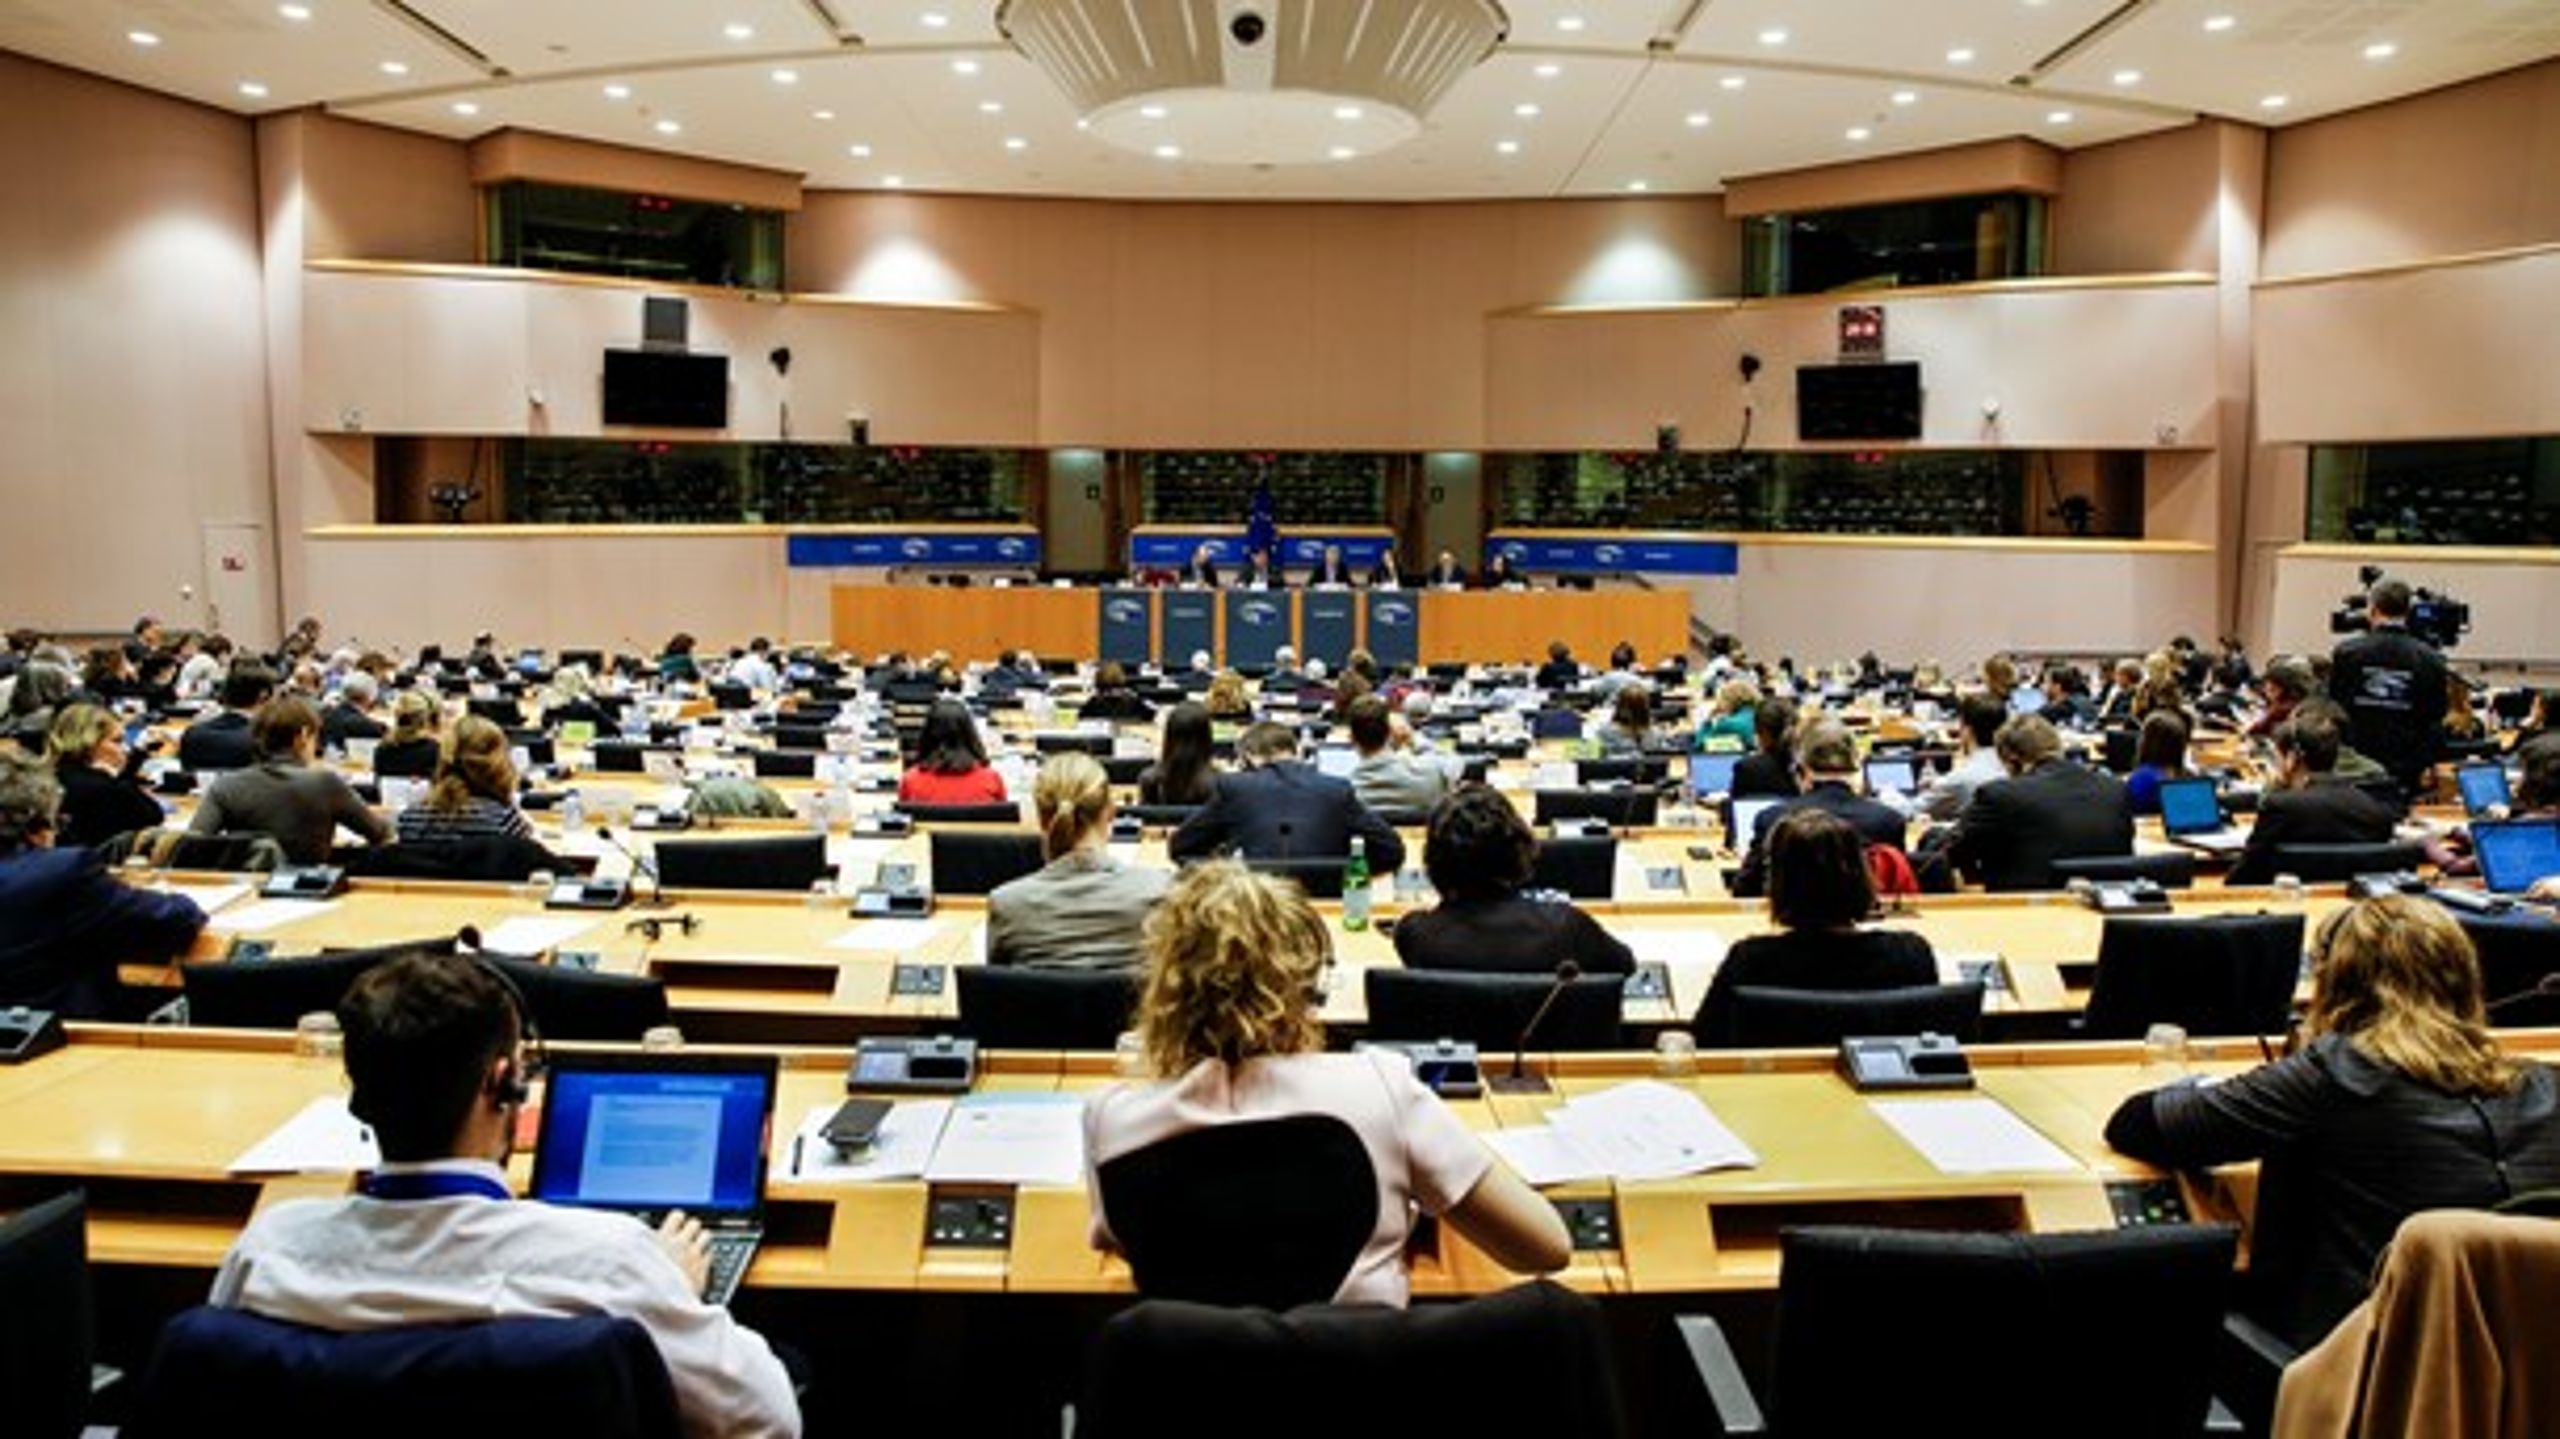 Tirsdag behandlede Europa-Parlamentet for første gang Danmarks ønske om en særaftale om Europol. Og umiddelbart tegner der sig velvilje blandt de folkevalgte i EU. (Arkivfoto.)